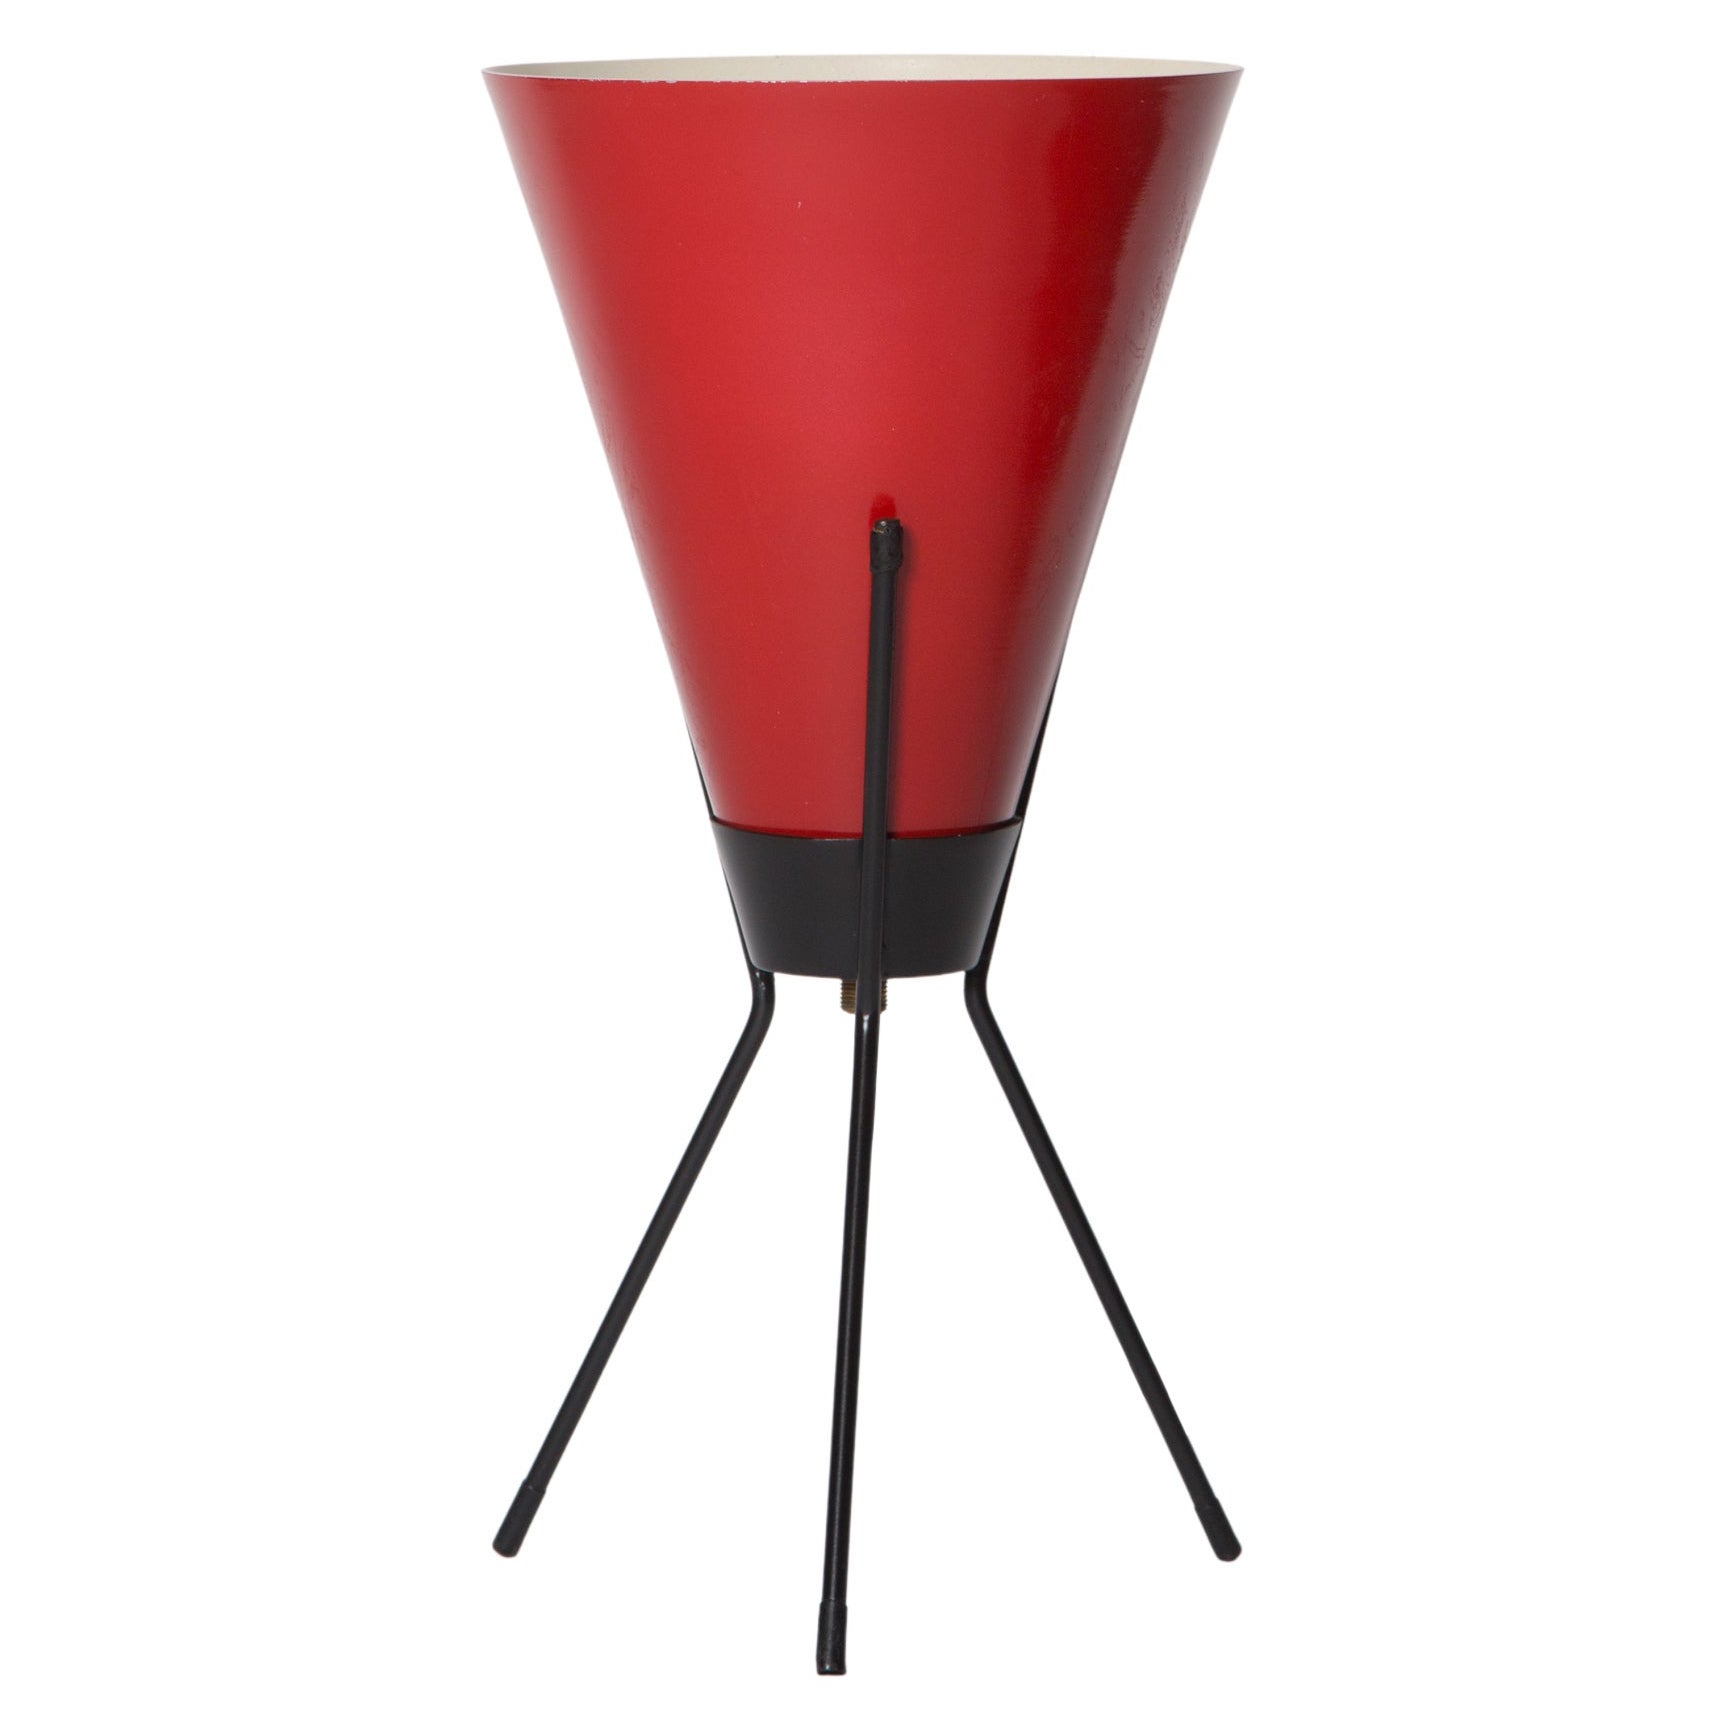 Rote Dreibein-Tischlampe „Vice Versa“, Stilux Milano zugeschrieben, 1960er Jahre